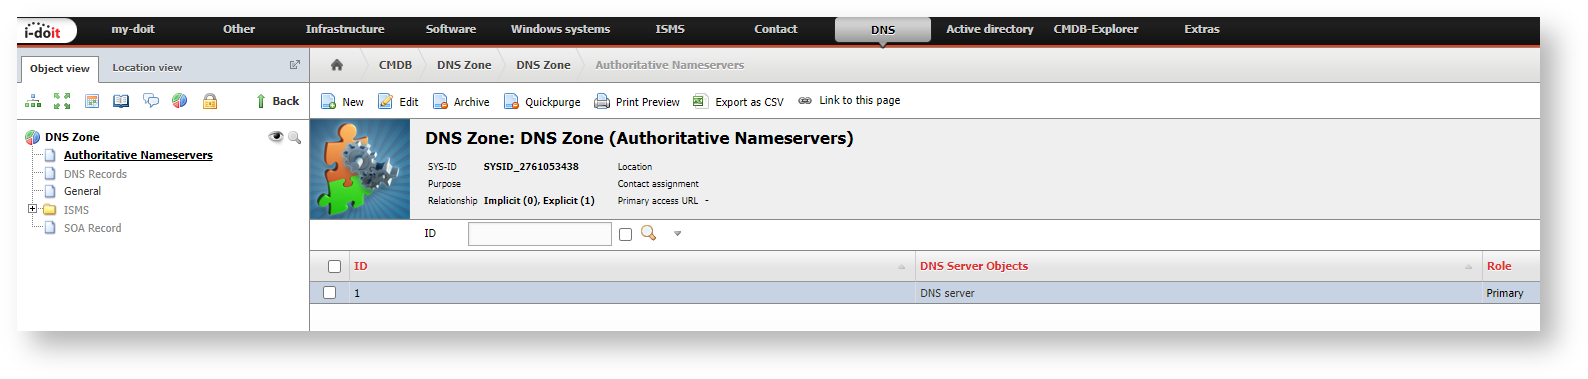 Authorizing name servers